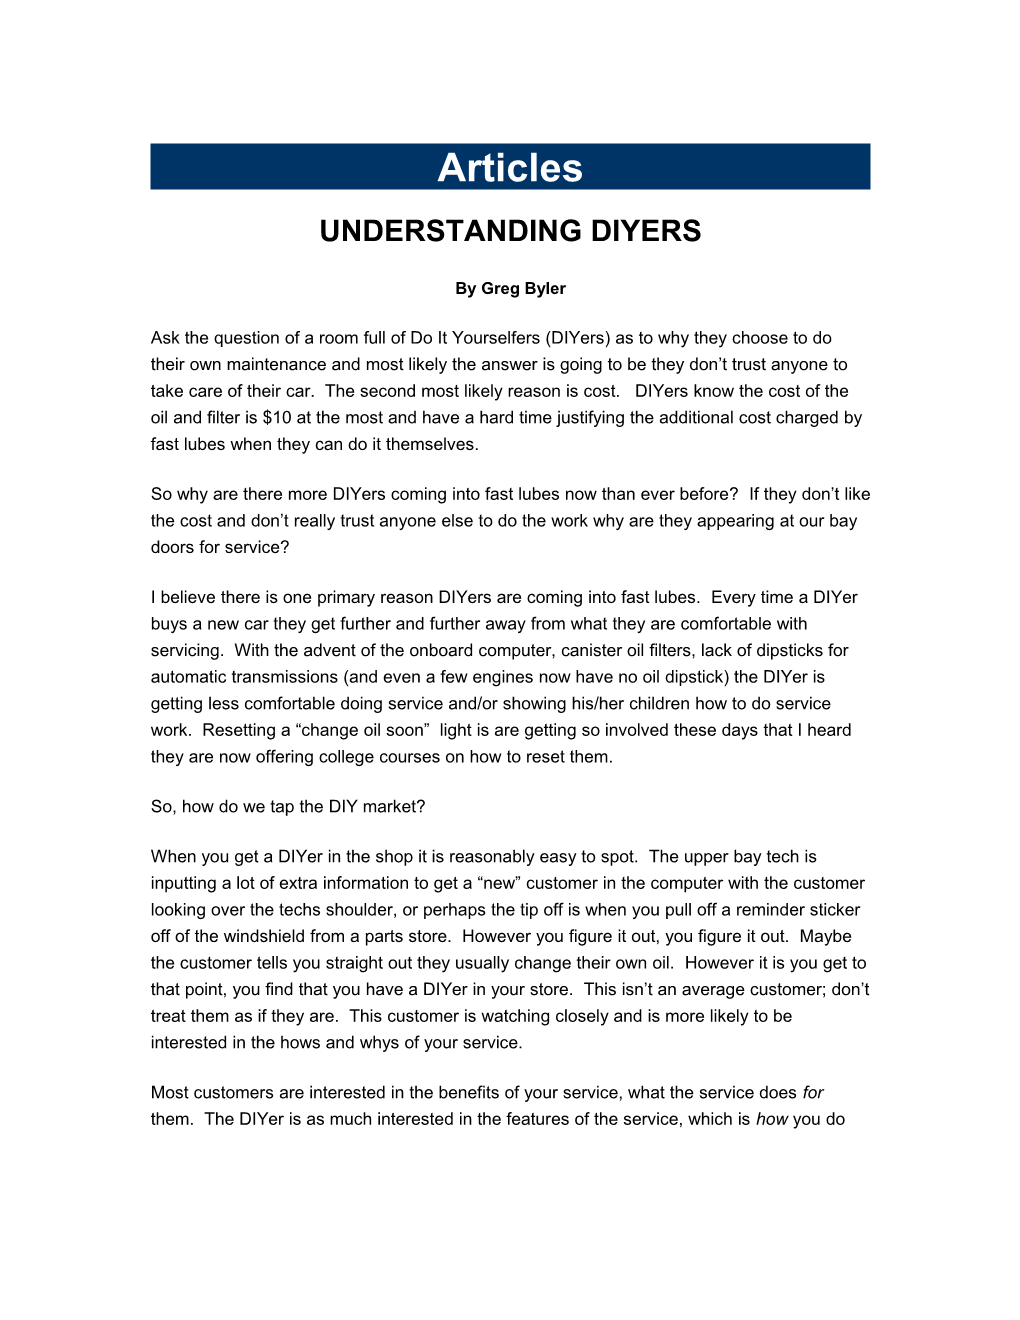 Understanding Diyers